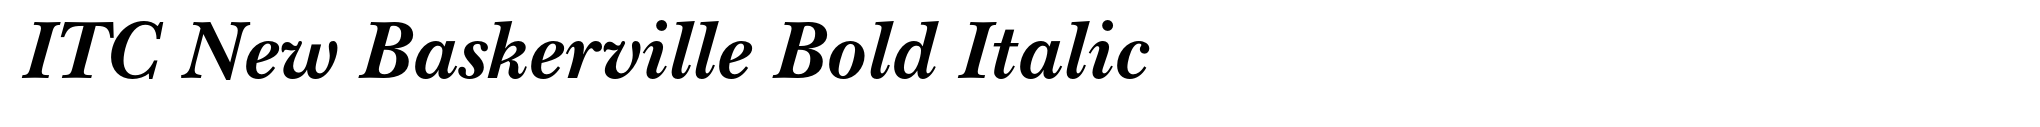 ITC New Baskerville Bold Italic image